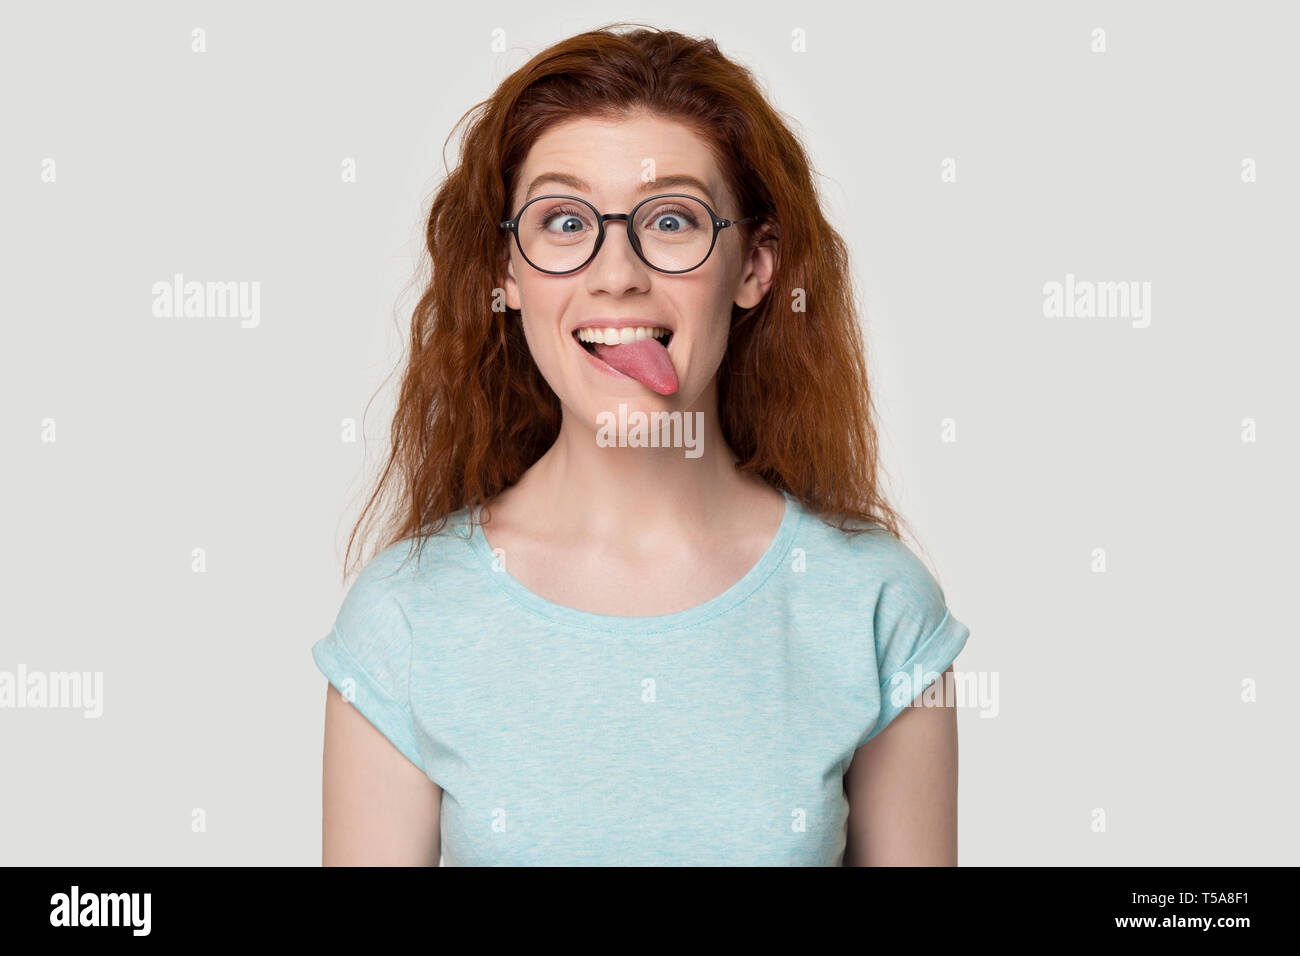 Drôle de fille aux cheveux roux à lunettes jouer langue montrant enfantin Banque D'Images